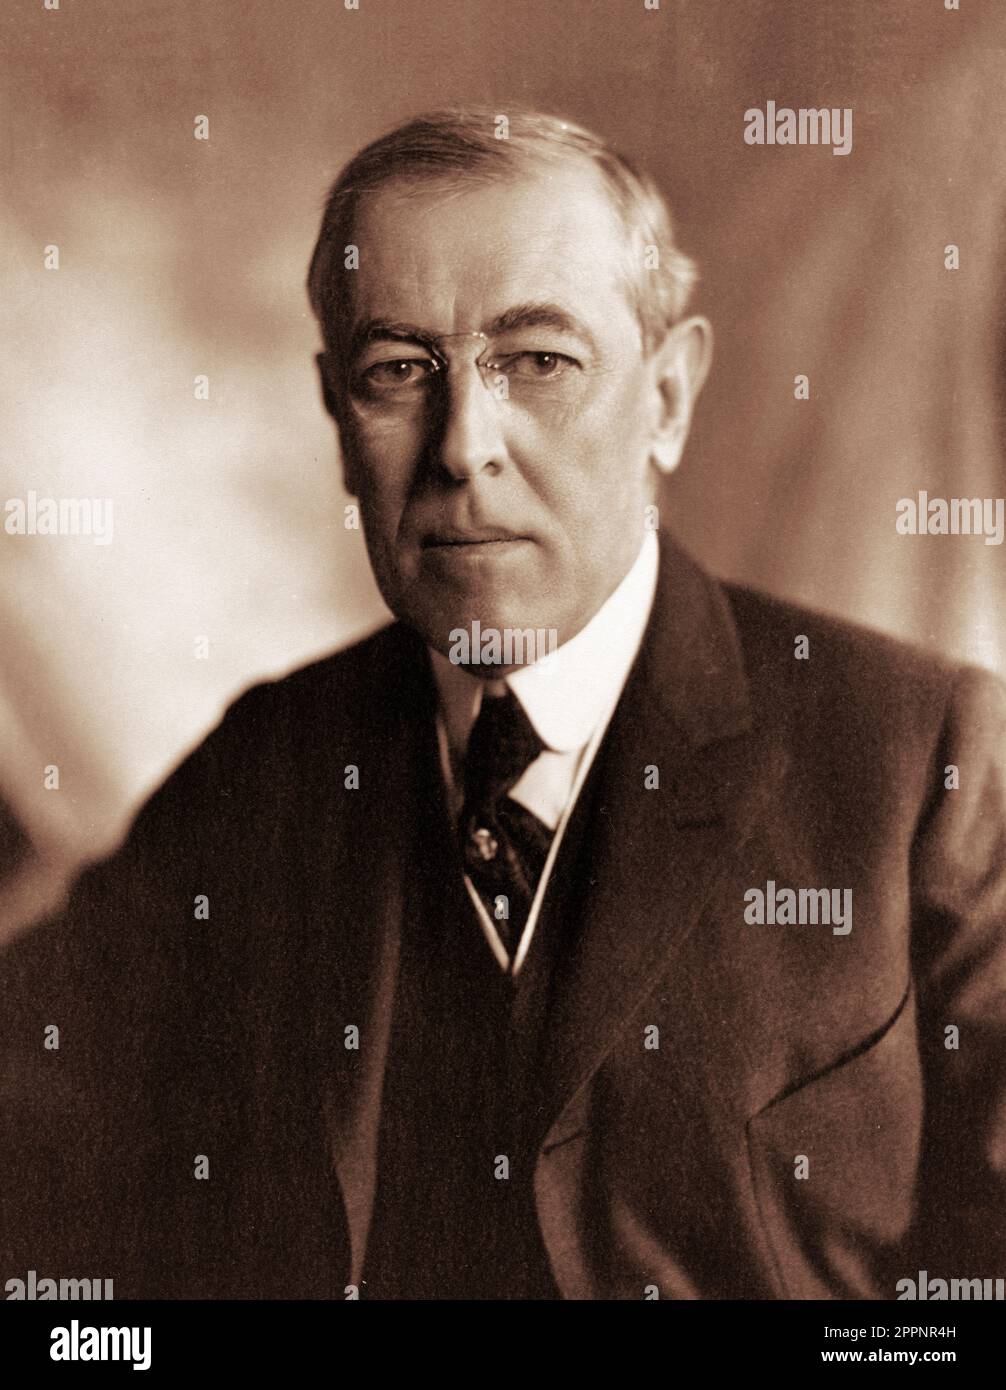 Woodrow Wilson (1856-1924). Portrait des 28. US-Präsidenten Thomas Woodrow Wilson von Harris und Ewing, c. 1912 Stockfoto